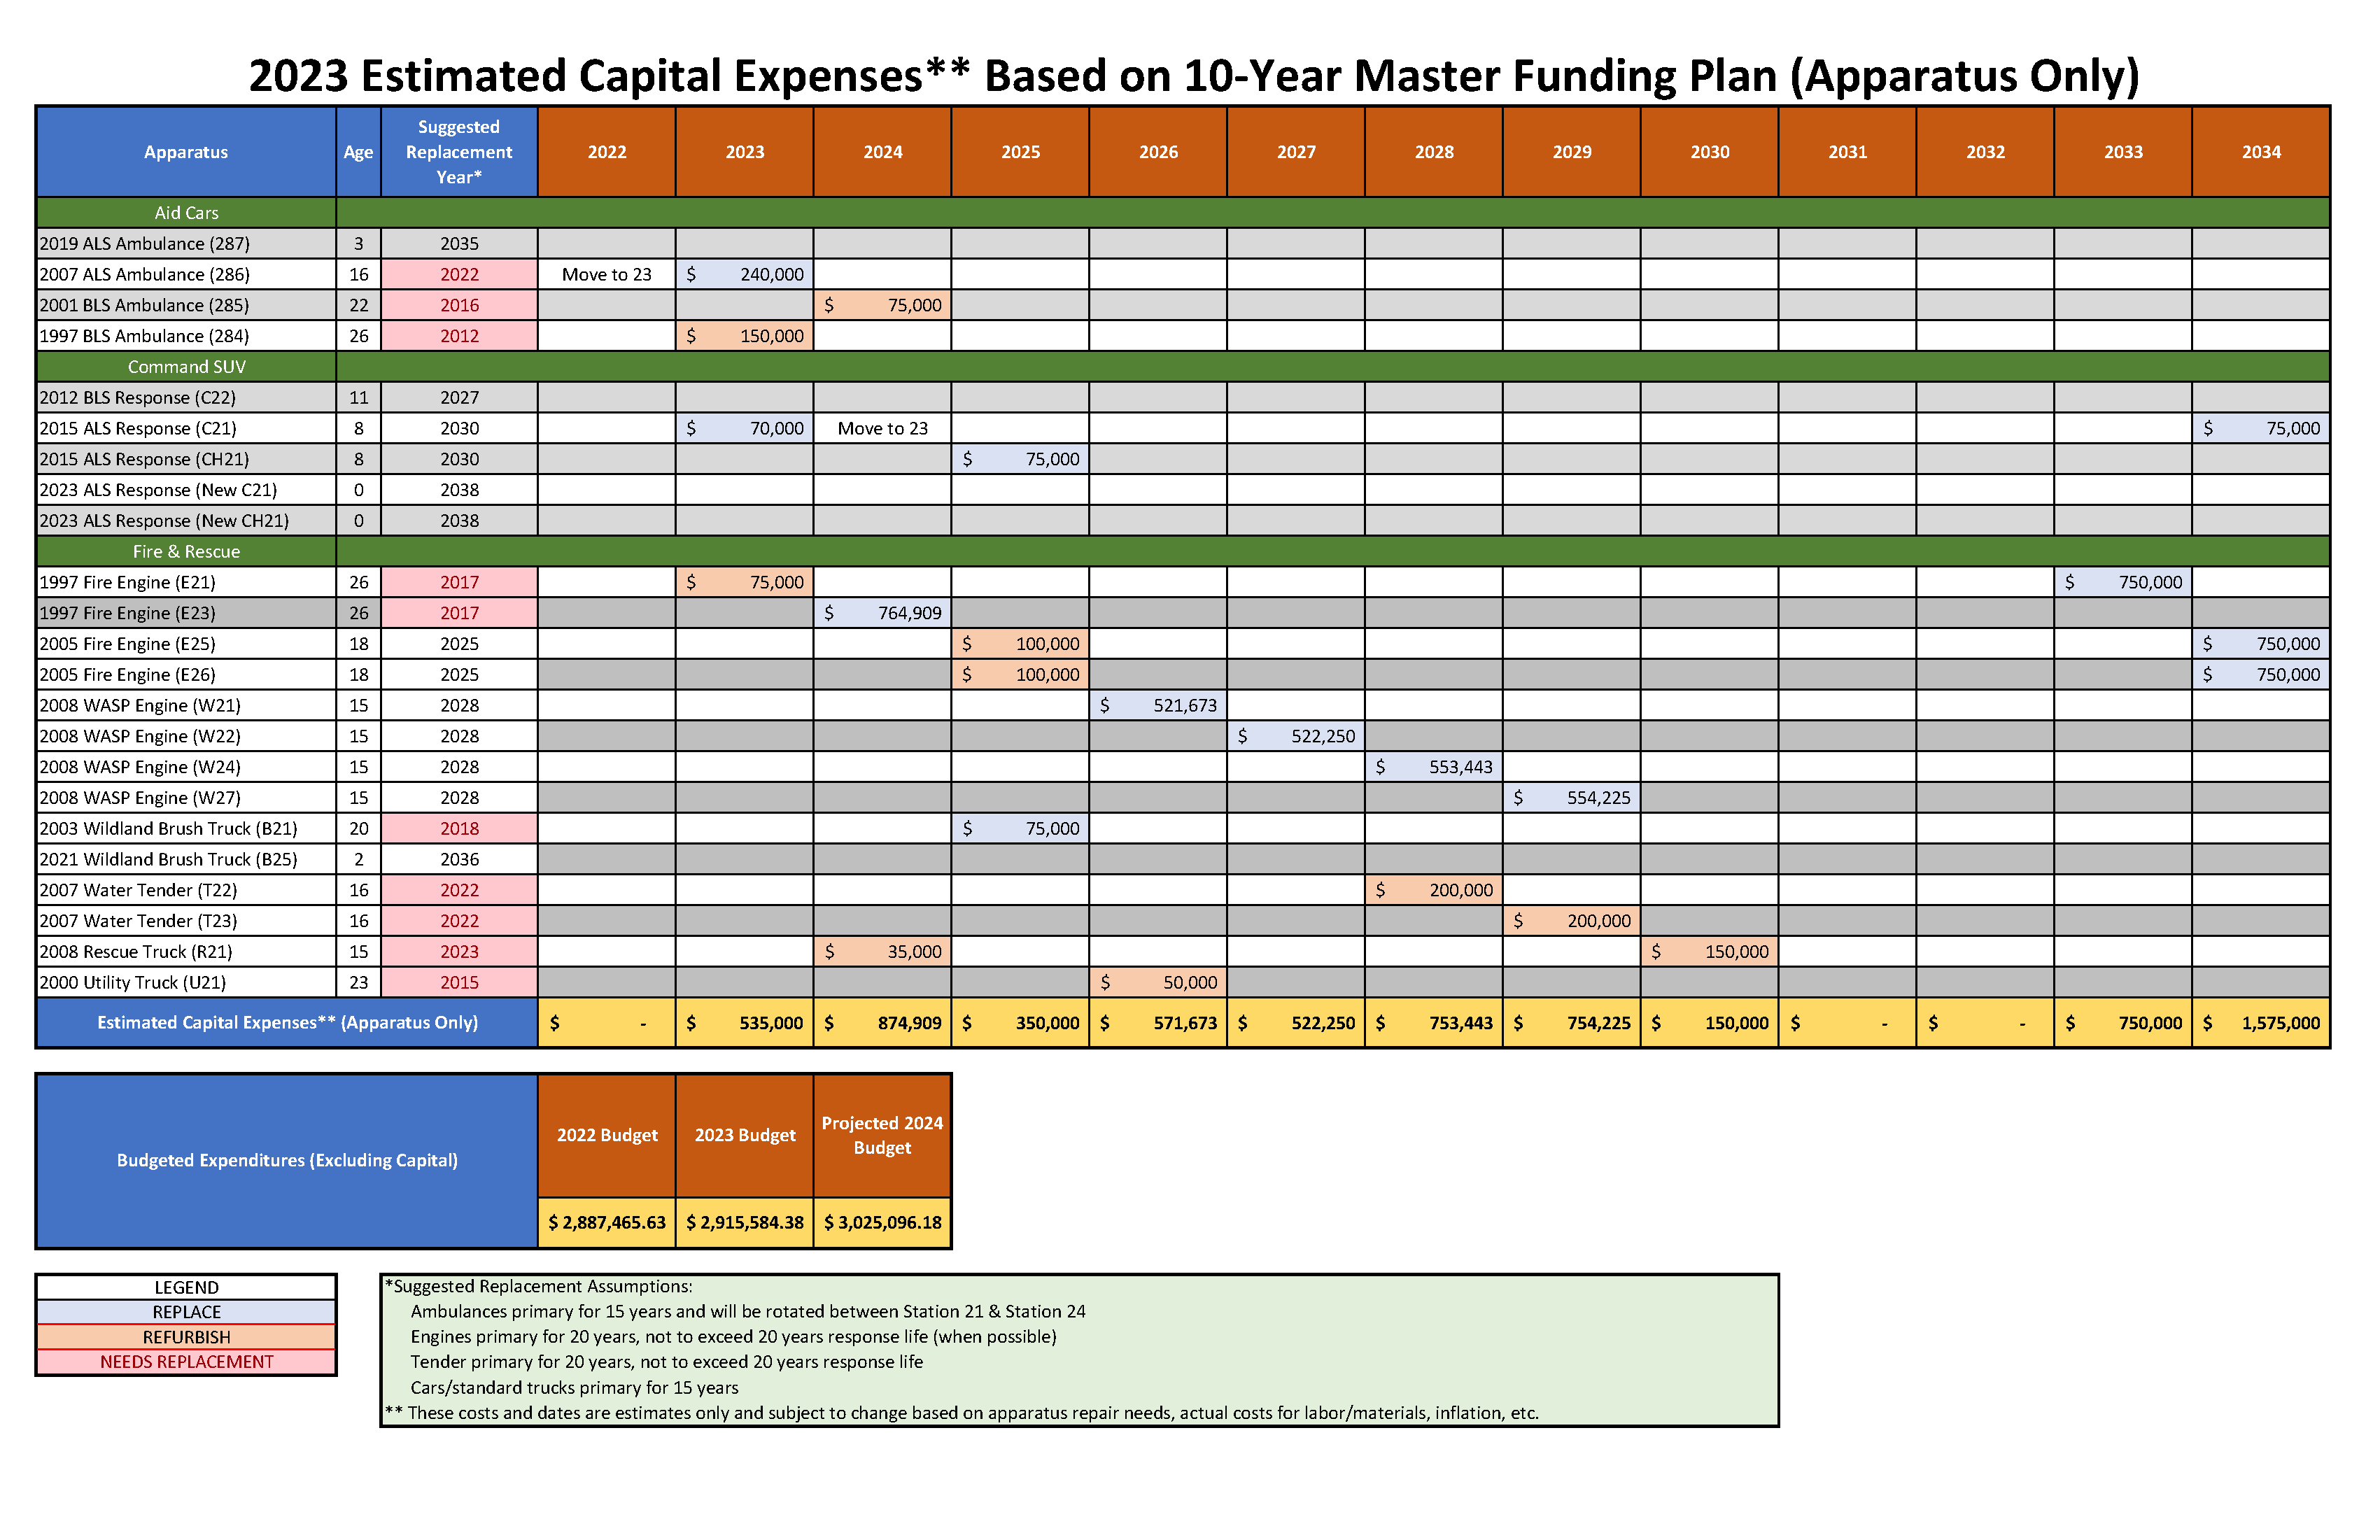 Estimated Capital Expenses Apparatus